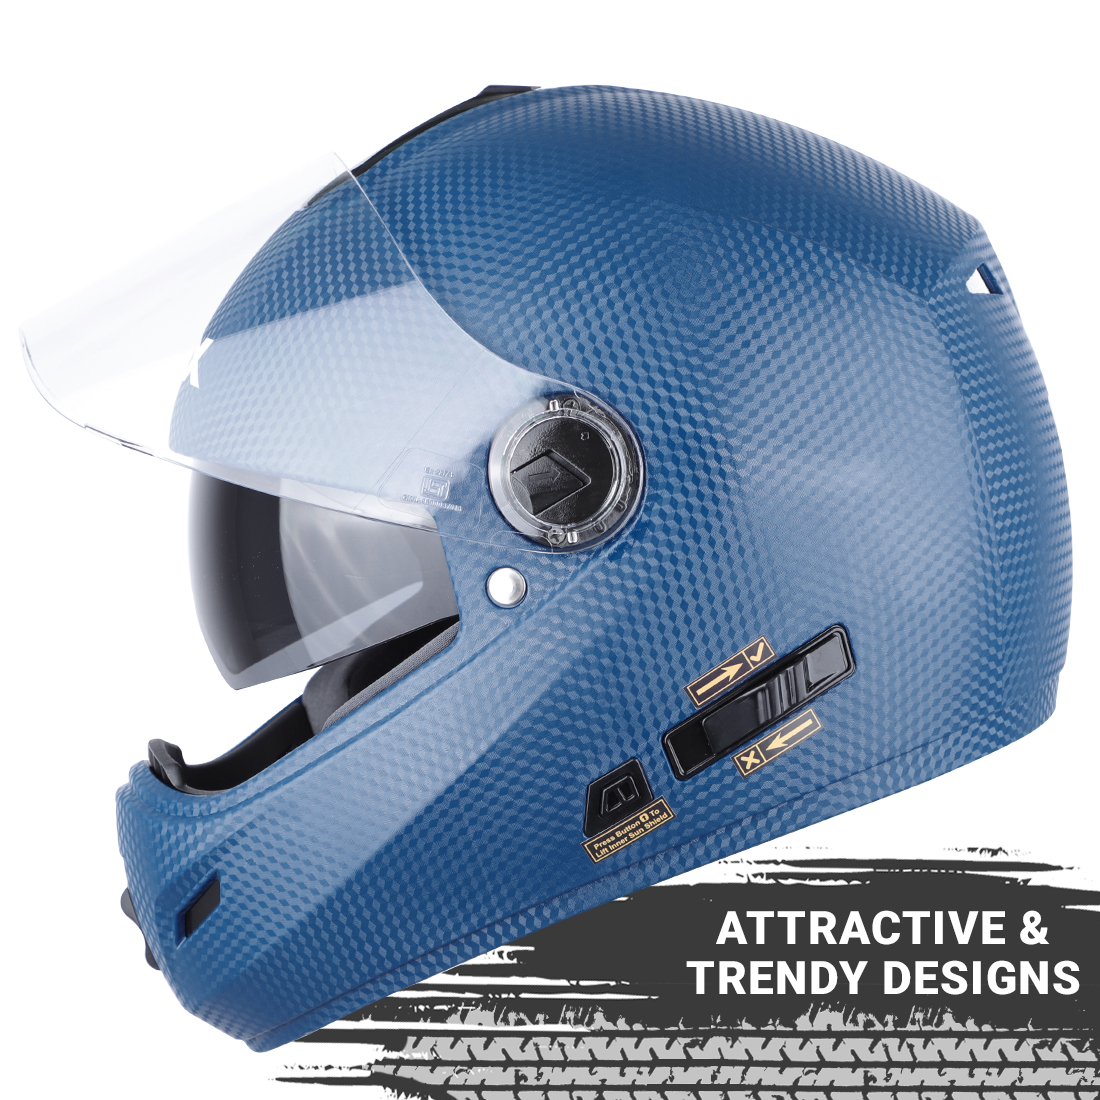 Steelbird Cyborg Double Visor Full Face Helmet, Inner Smoke Sun Shield And Outer Clear Visor ( Dashing Blue )